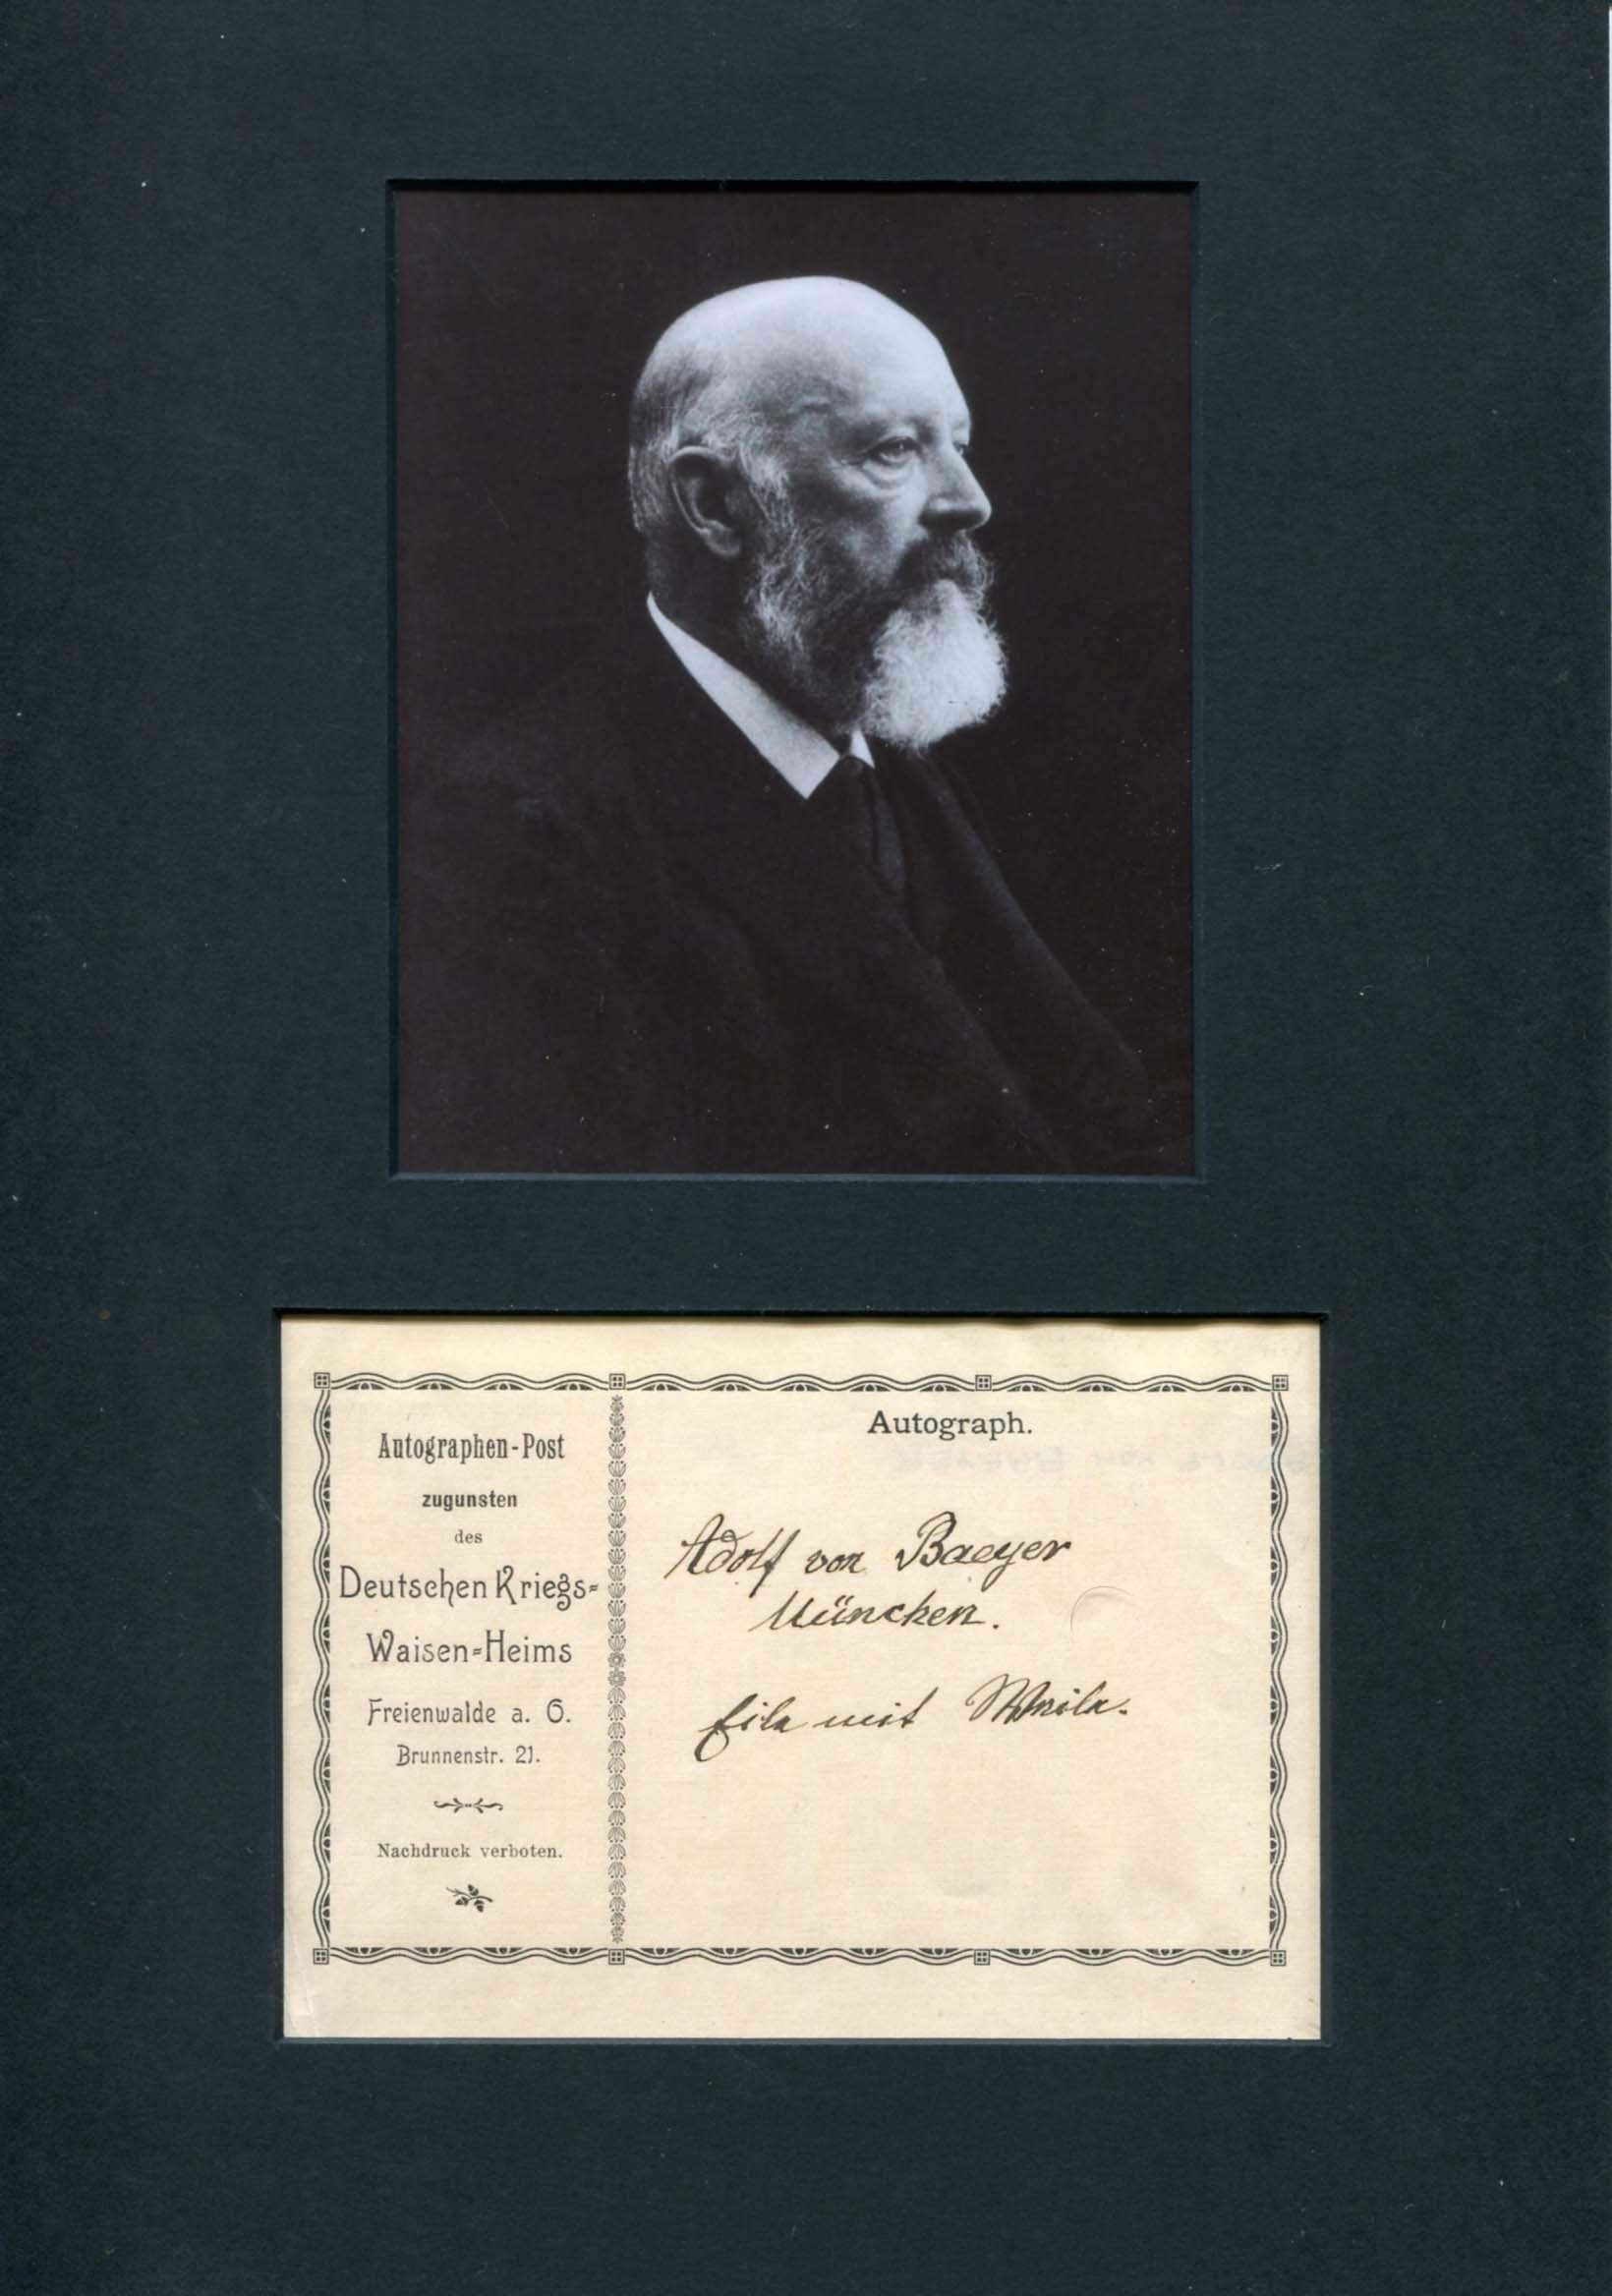 von Baeyer, Adolf autograph